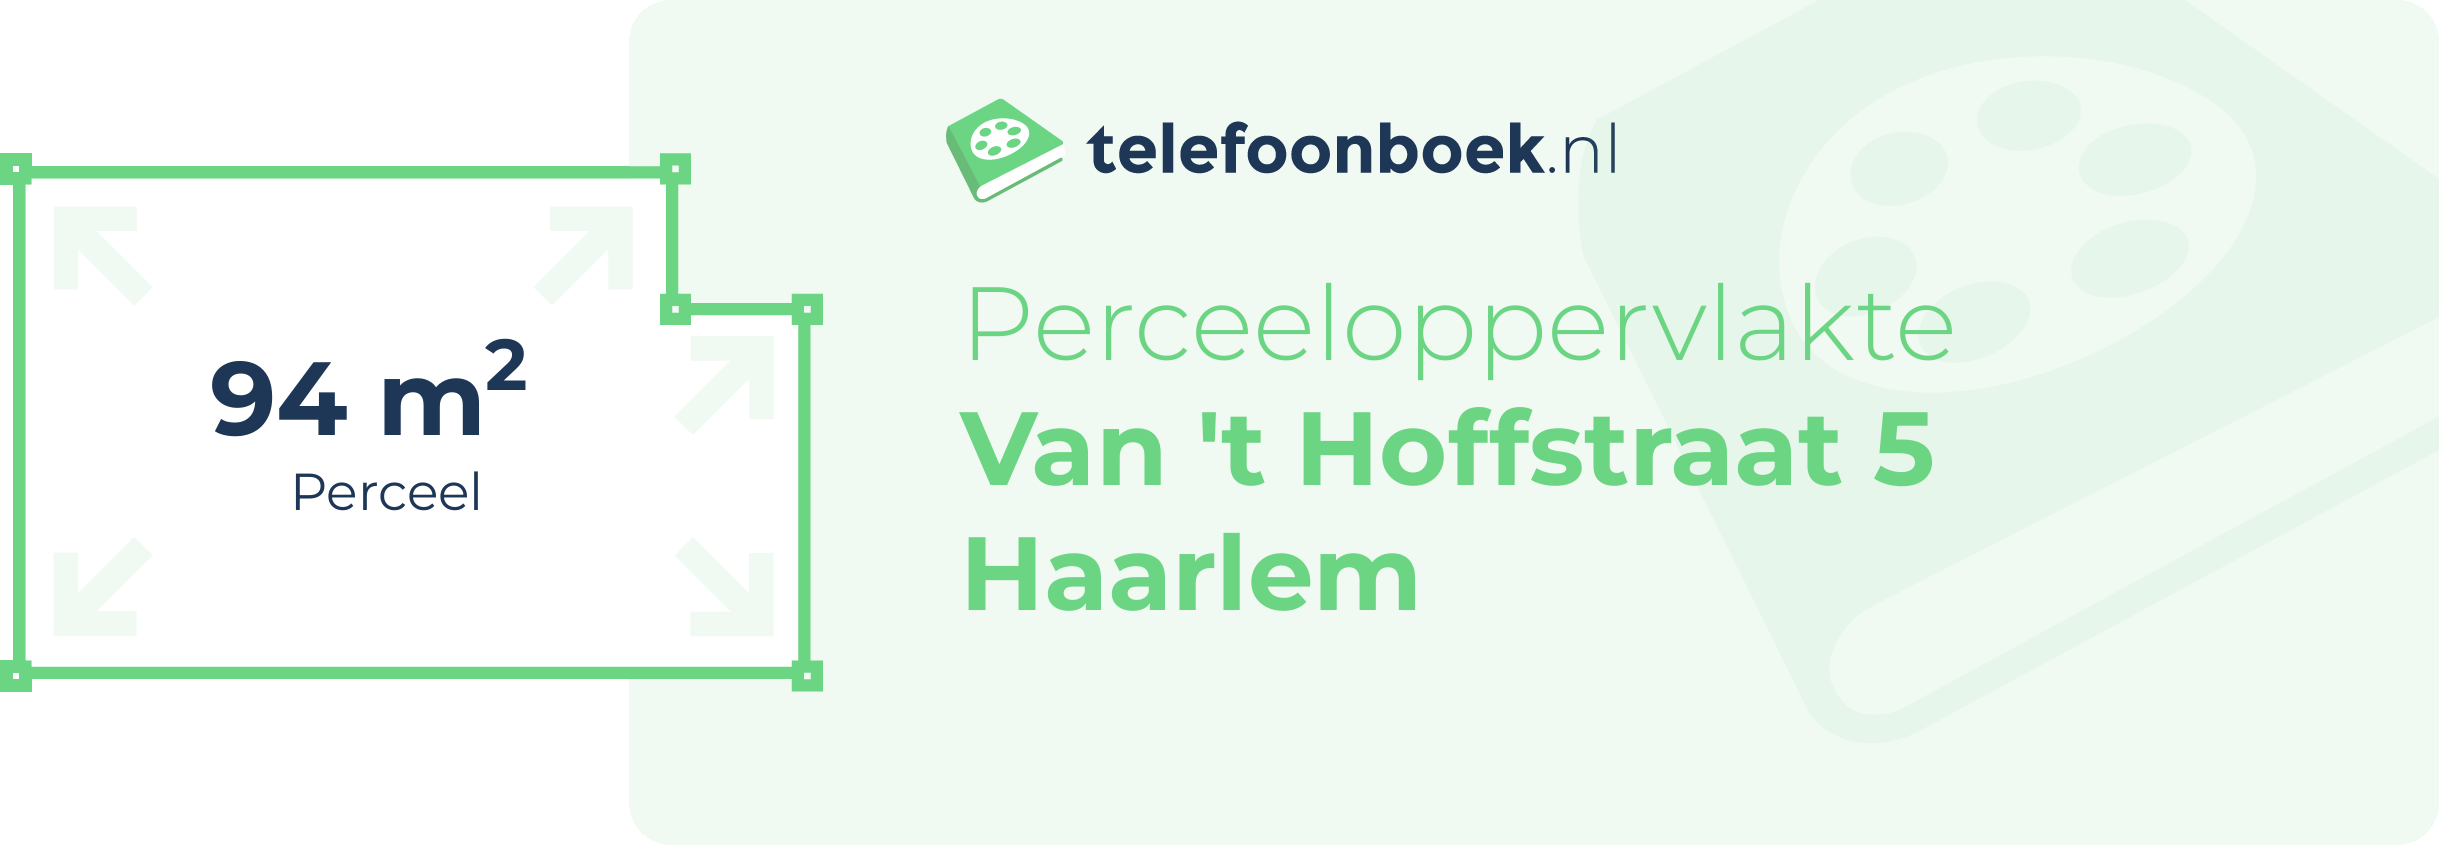 Perceeloppervlakte Van 't Hoffstraat 5 Haarlem